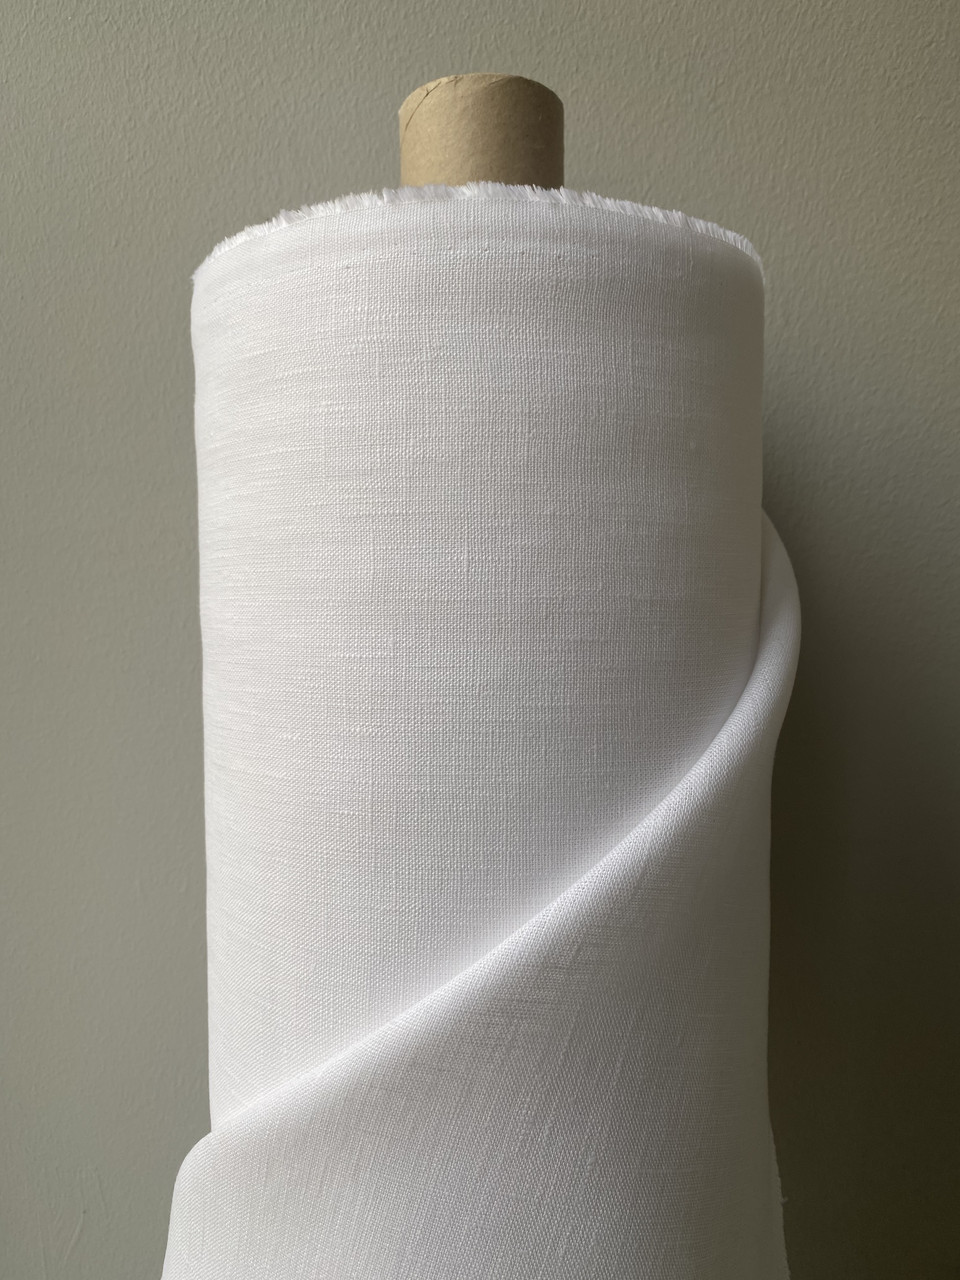 Біла лляна тканина, 100% льон, колір 101